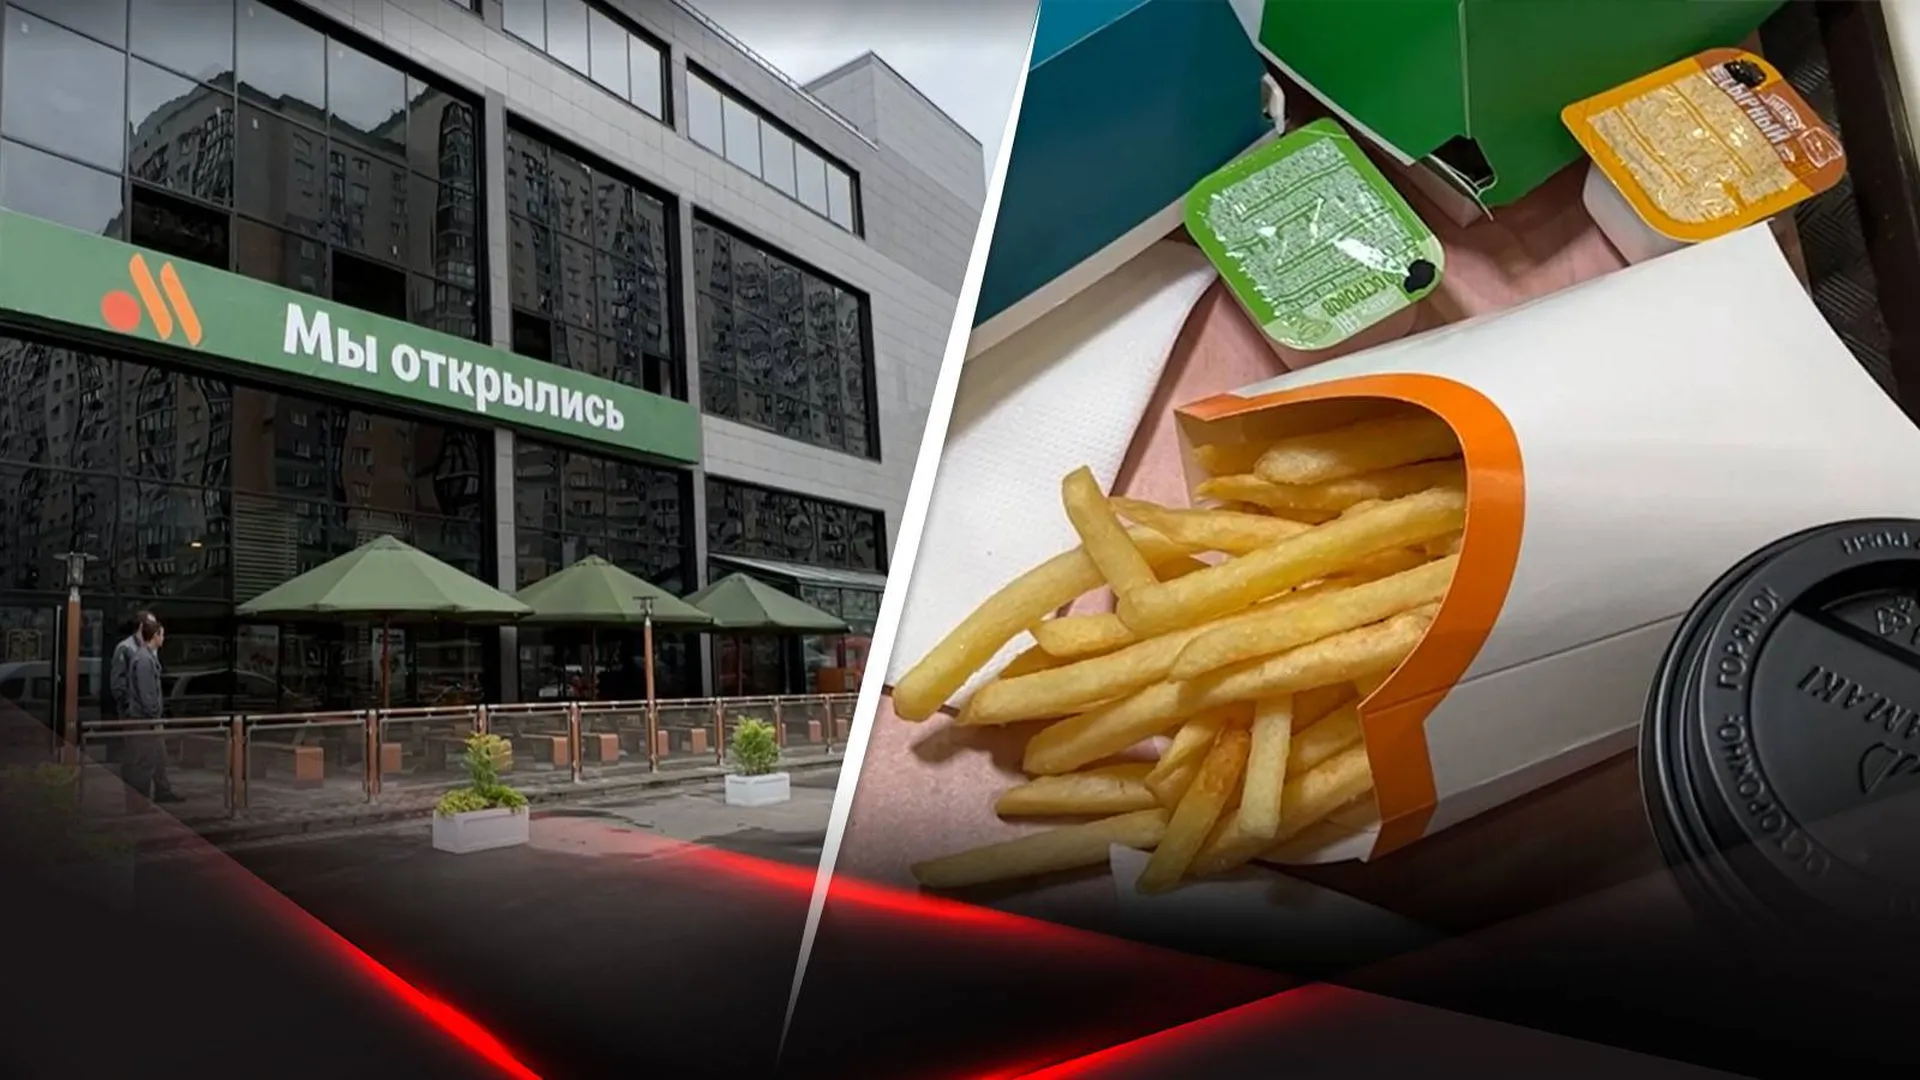 Ресторанов «Вкусно — и точка» станет больше в Подмосковье. Там можно сделать карьеру